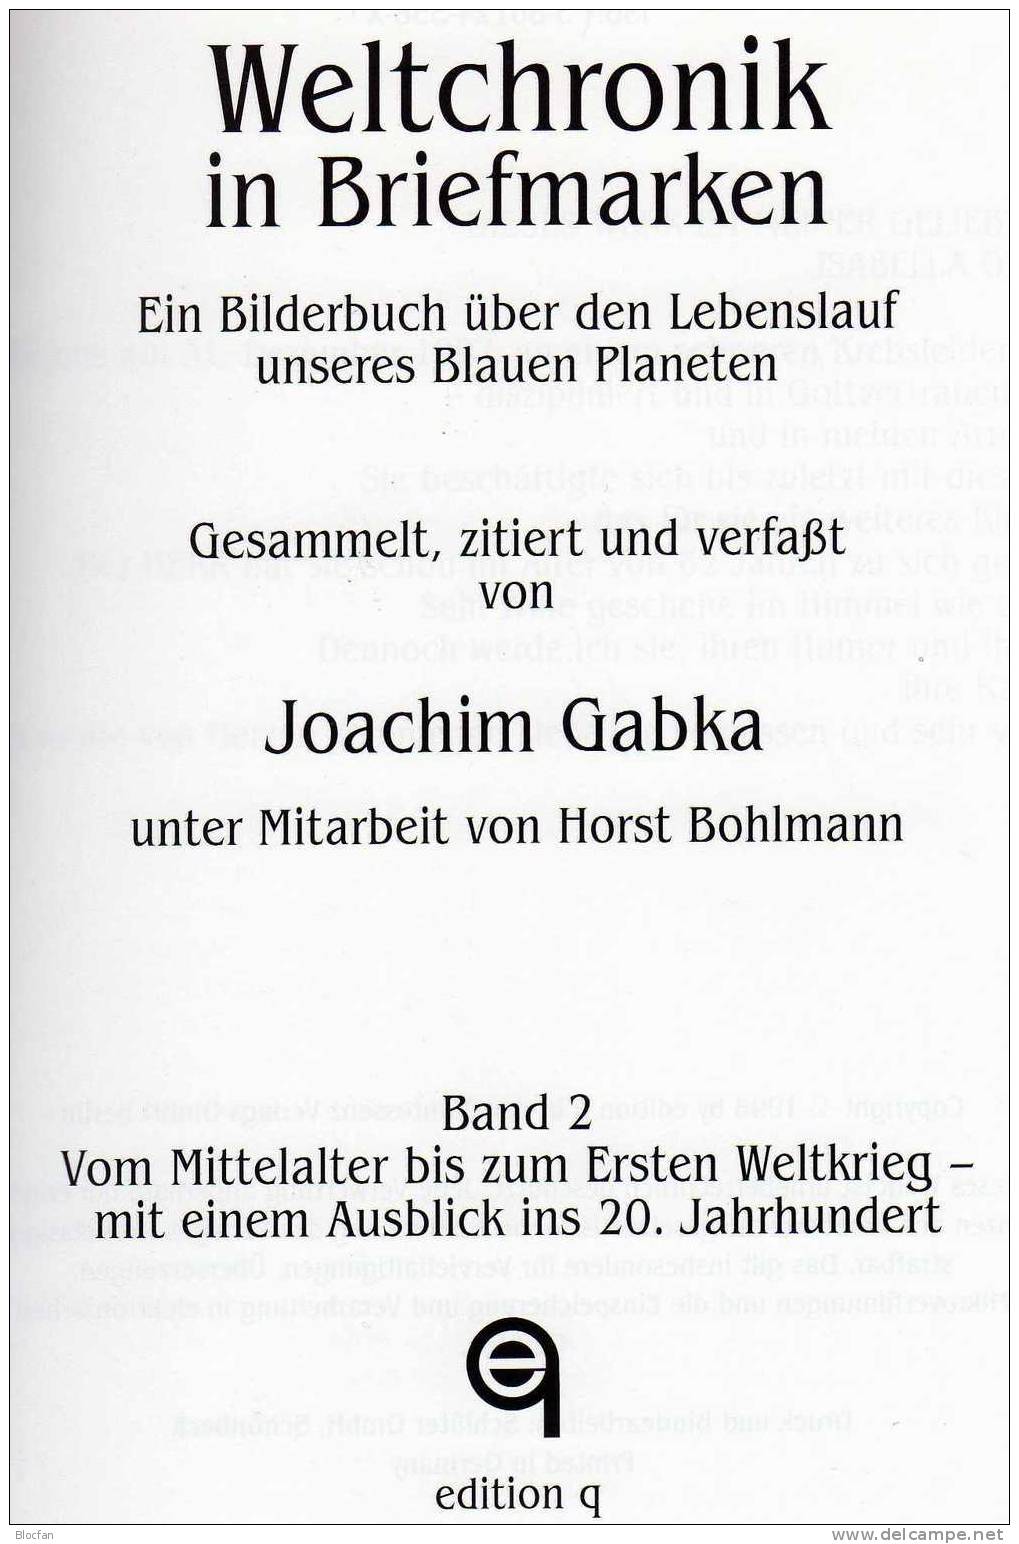 Fachbuch über Die Erde Weltchronik In Briefmarken Gabka 1998 Bis 20.Jhd. Antiquarisch 60€ Mit 800 Postwertzeichen Belegt - Sammeln